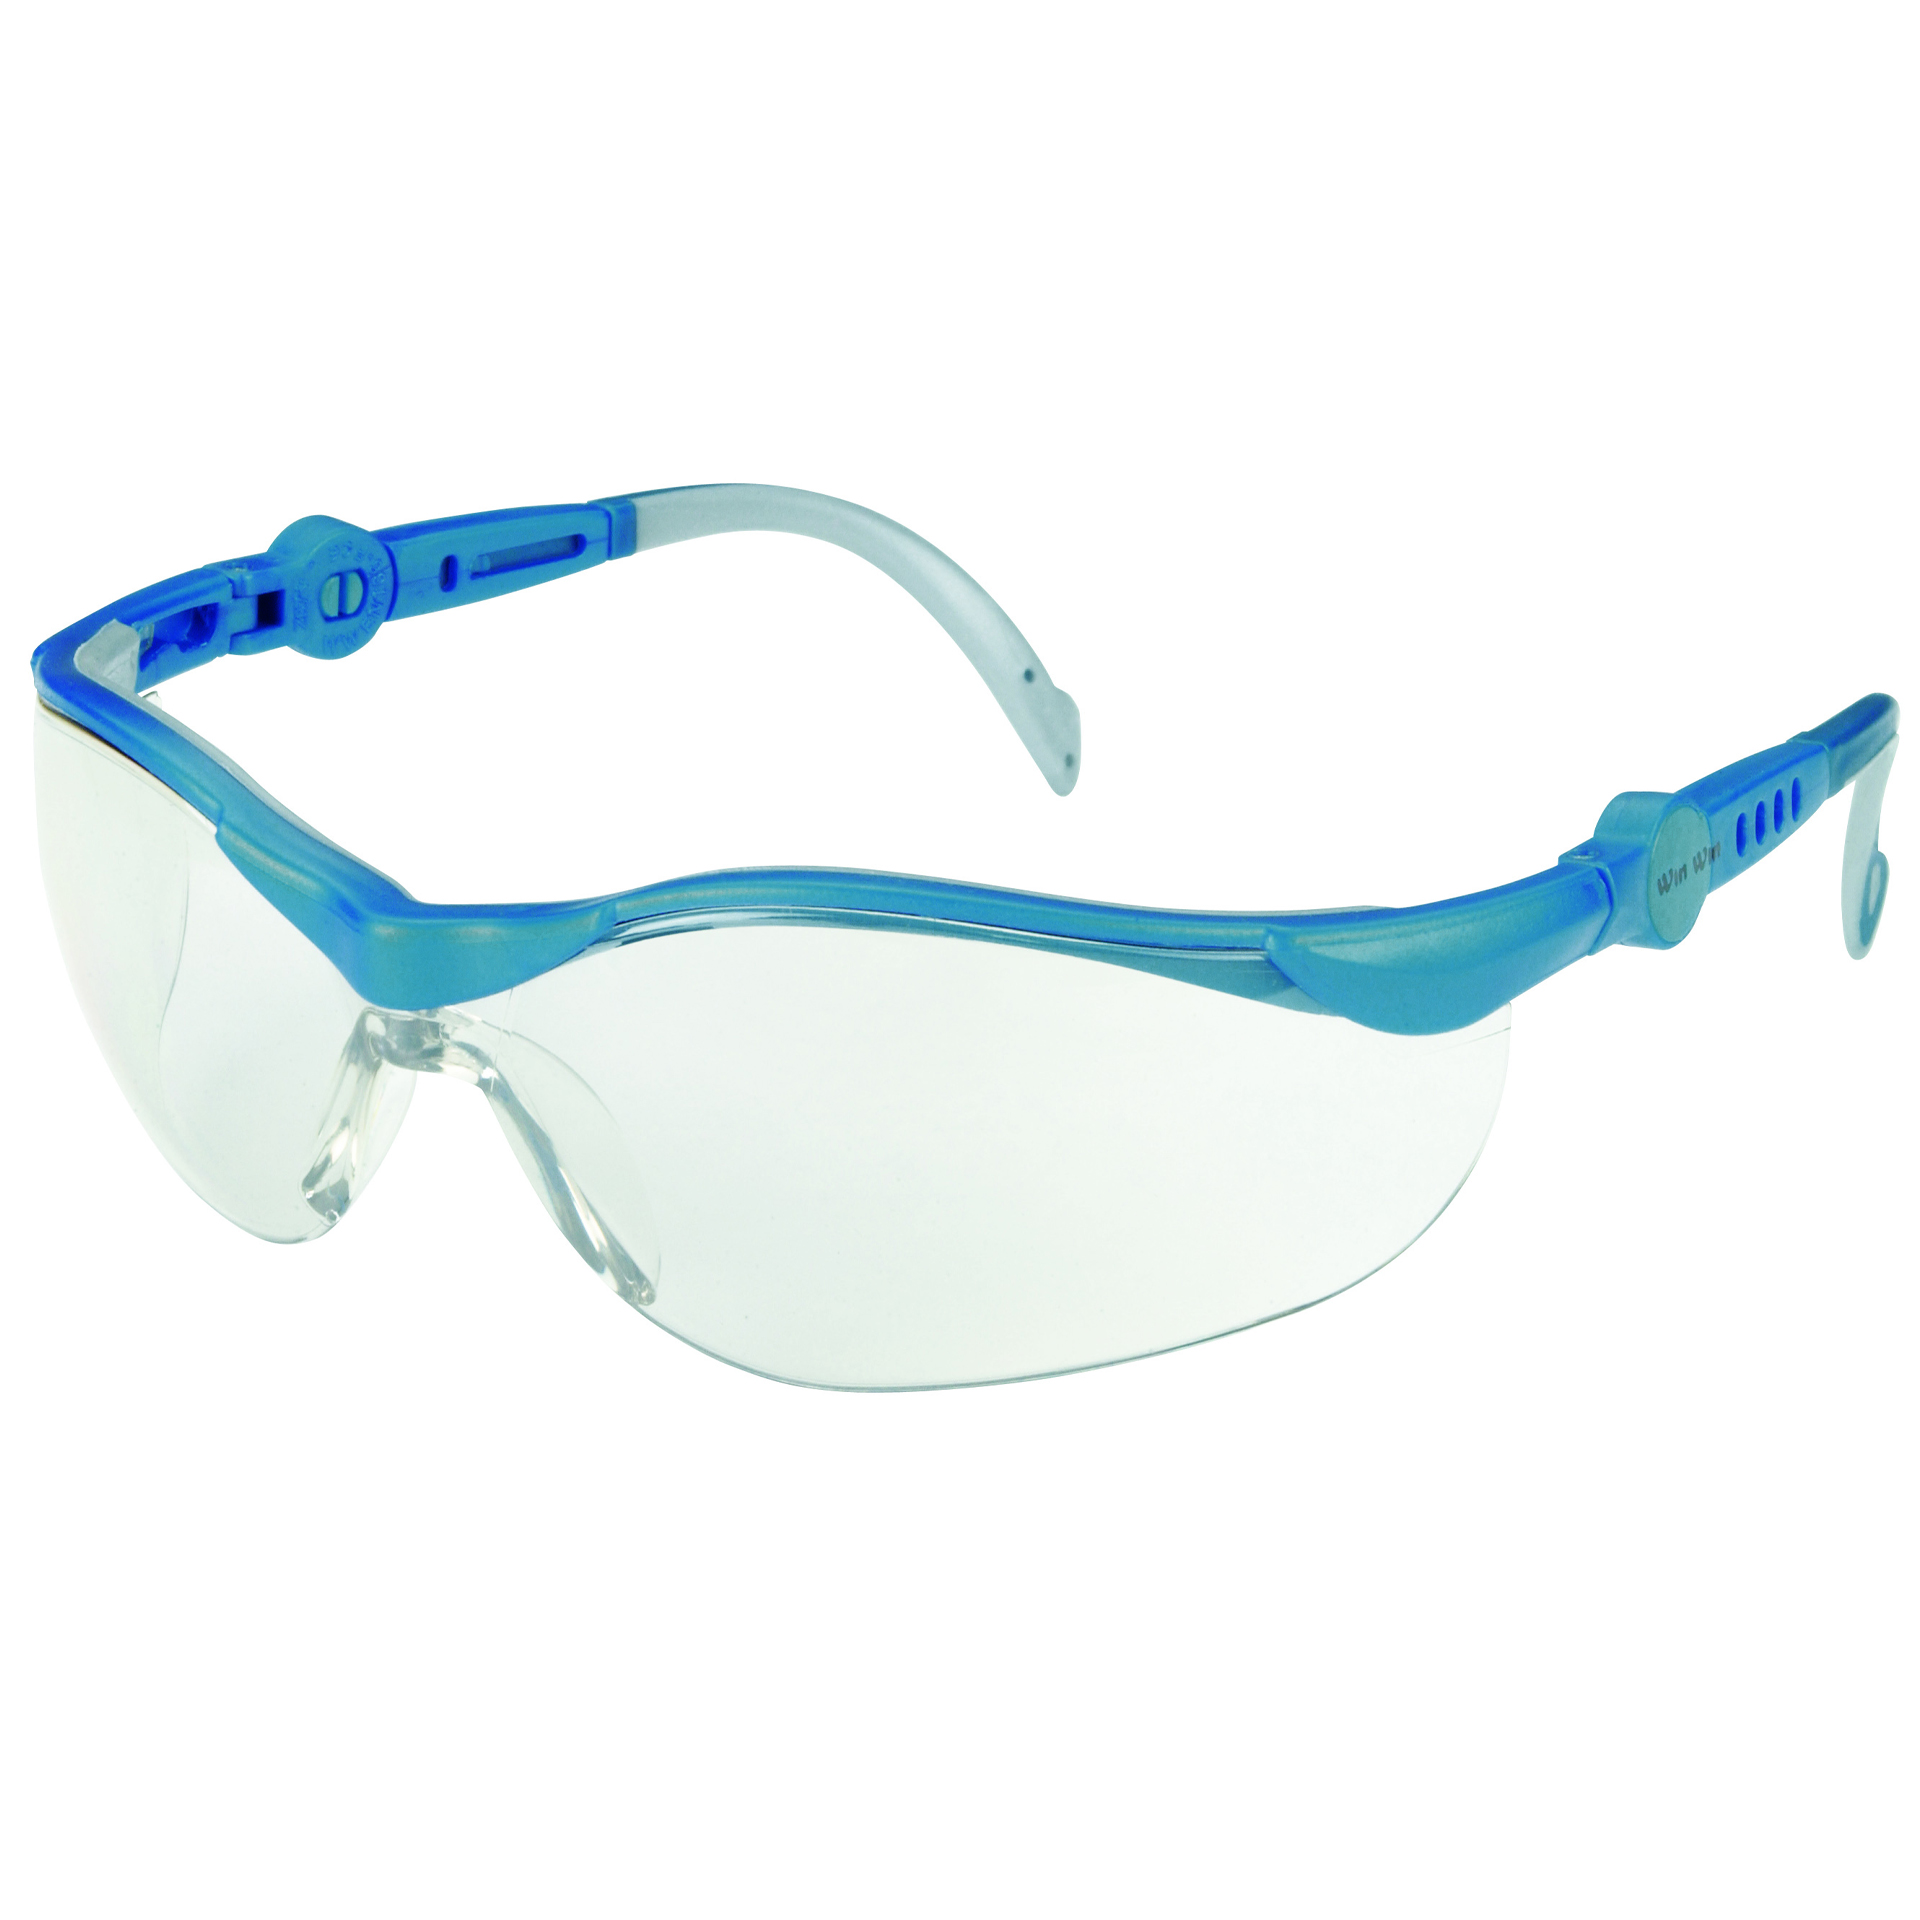 Arbeitsschutzbrille blau/grau